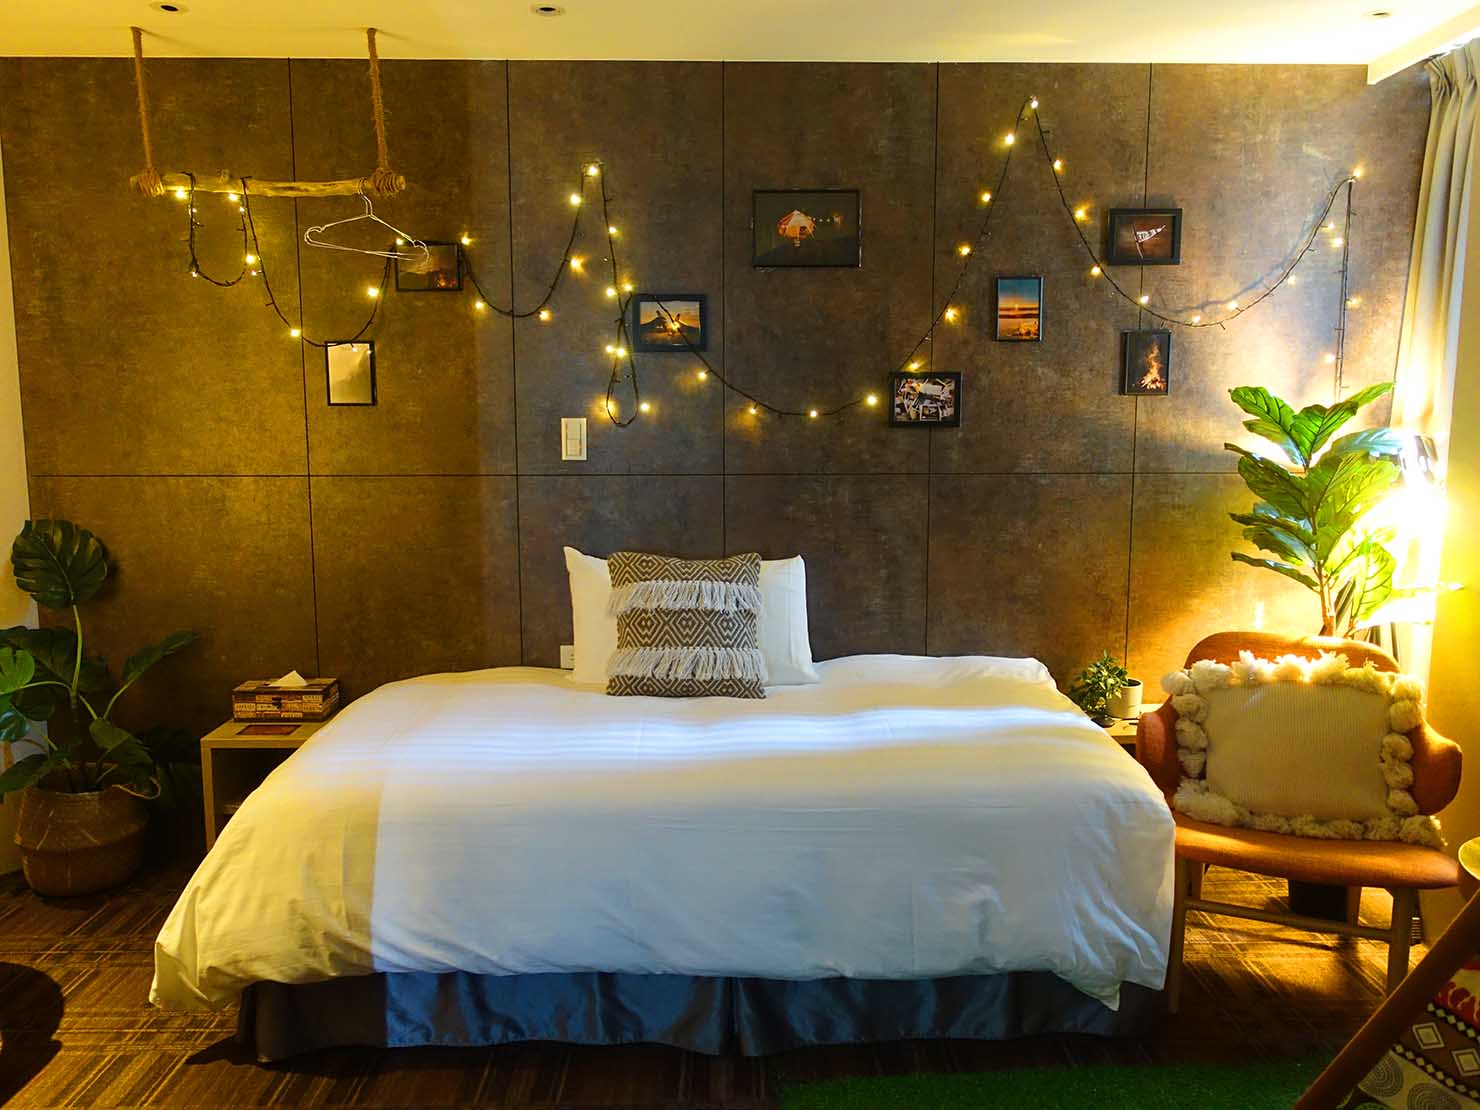 台北のおすすめLGBTフレンドリーホテル「路徒行旅 Roaders Hotel」デラックス・シングルルームのベッド